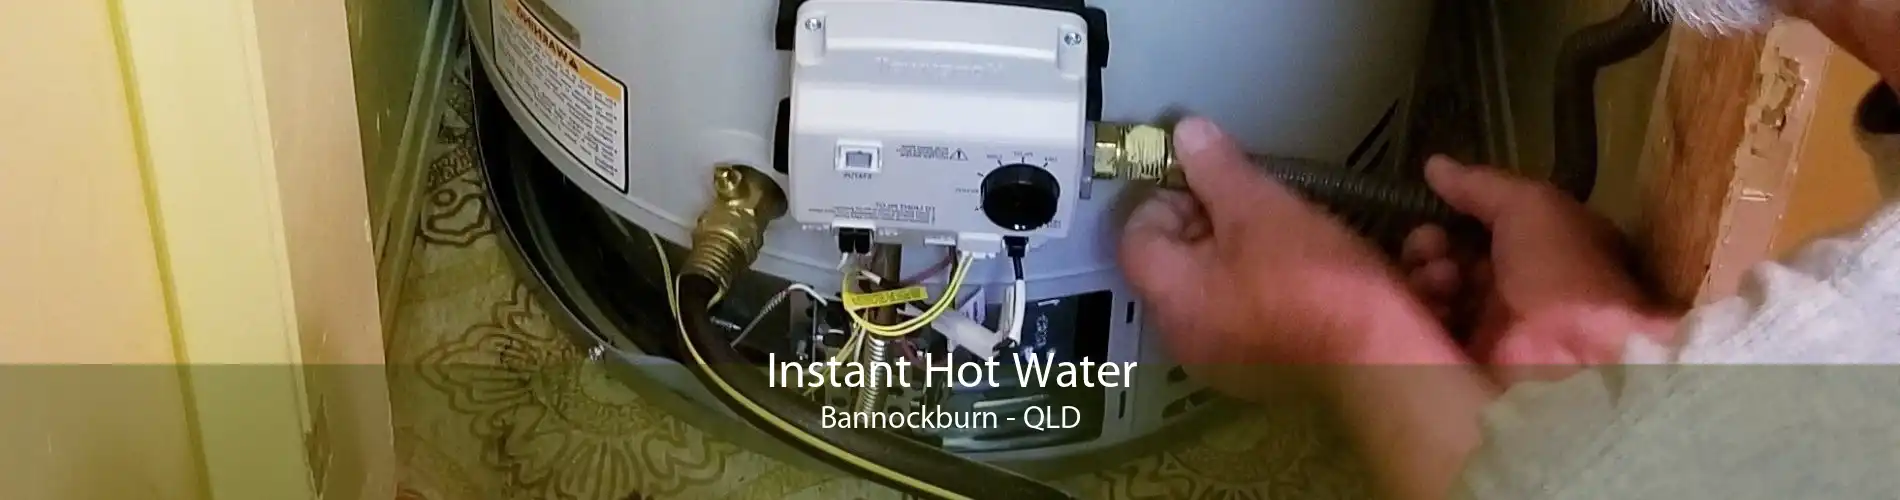 Instant Hot Water Bannockburn - QLD